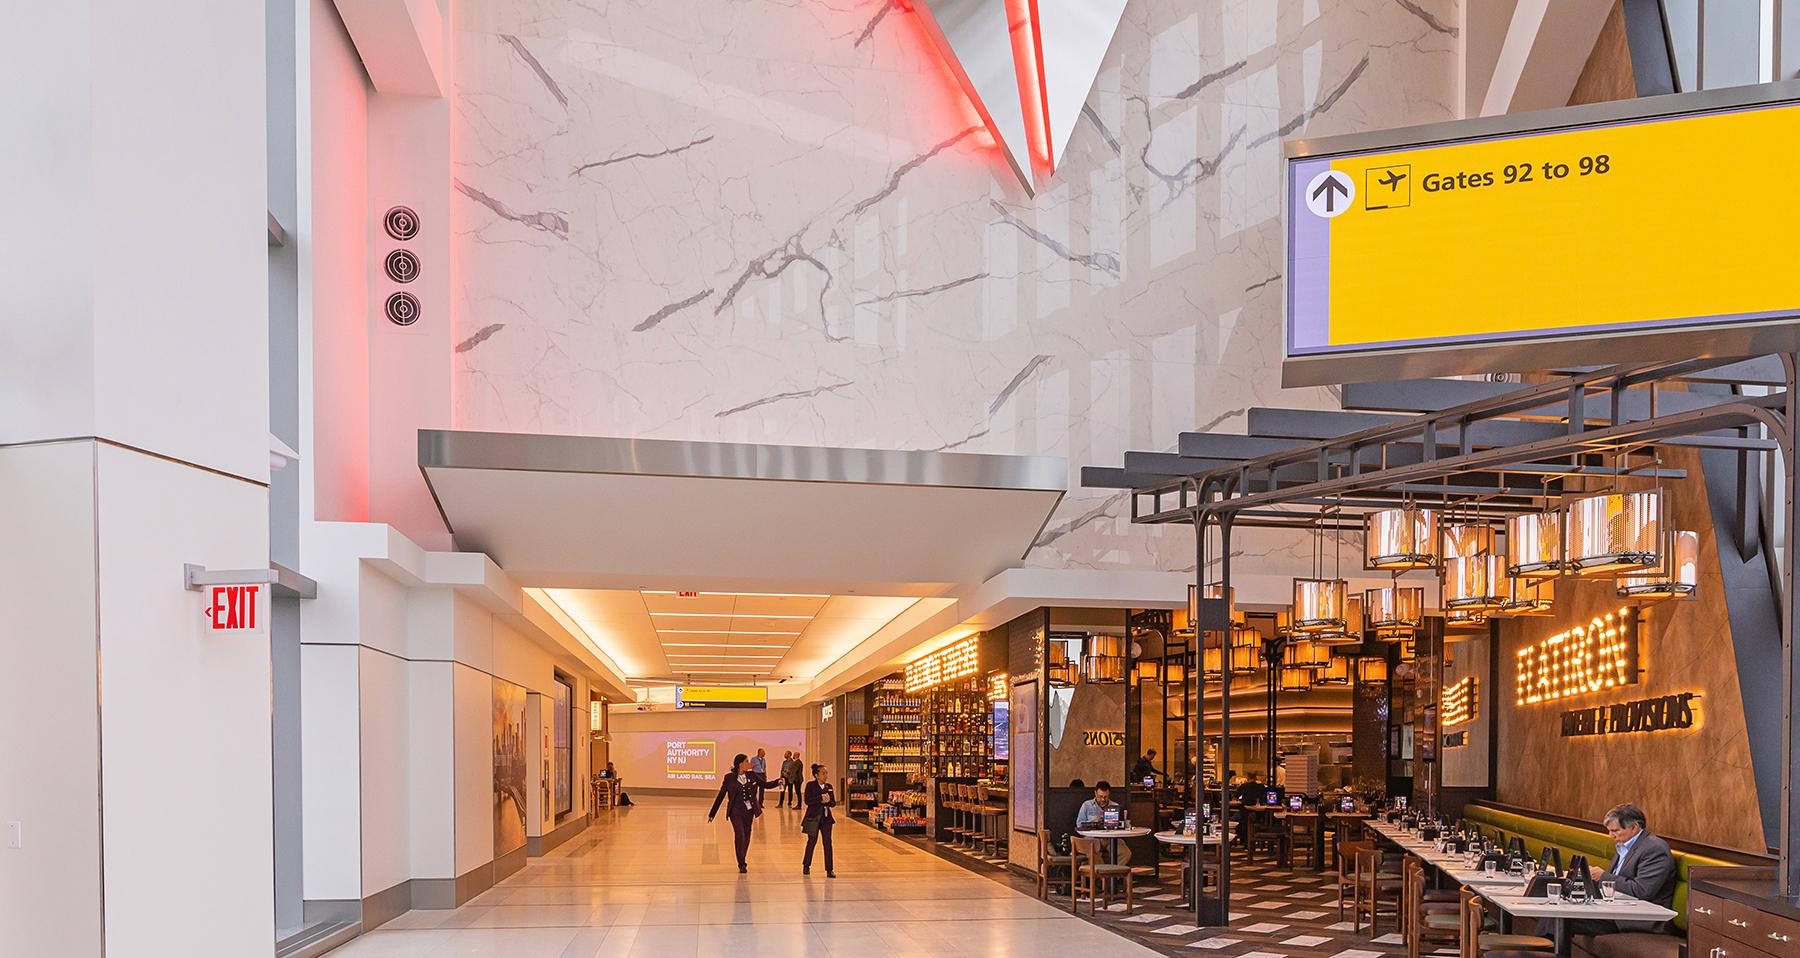 Нью-Йоркський аеропорт LaGuardia показав свій новий термінал  який вигляд він має - Закордон